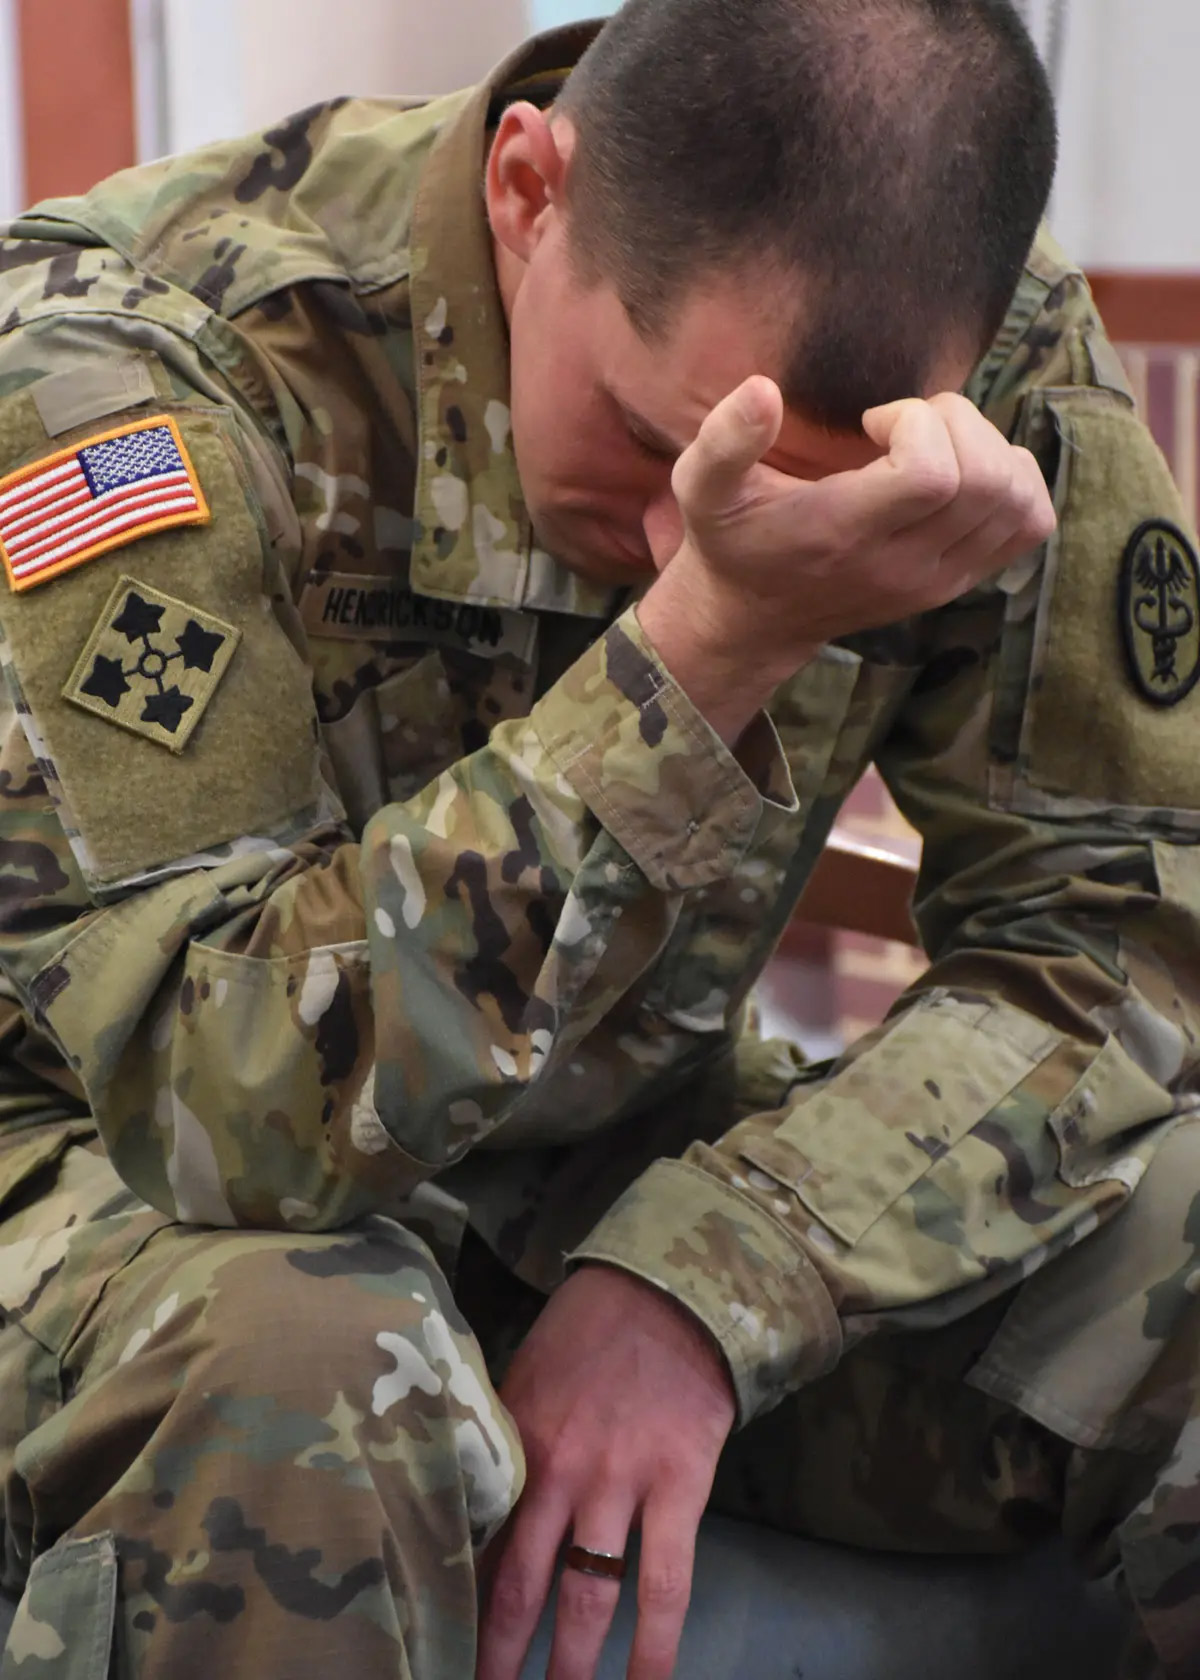 El trastorno de adaptación representa más de una cuarta parte de los soldados que reciben tratamiento de salud conductual